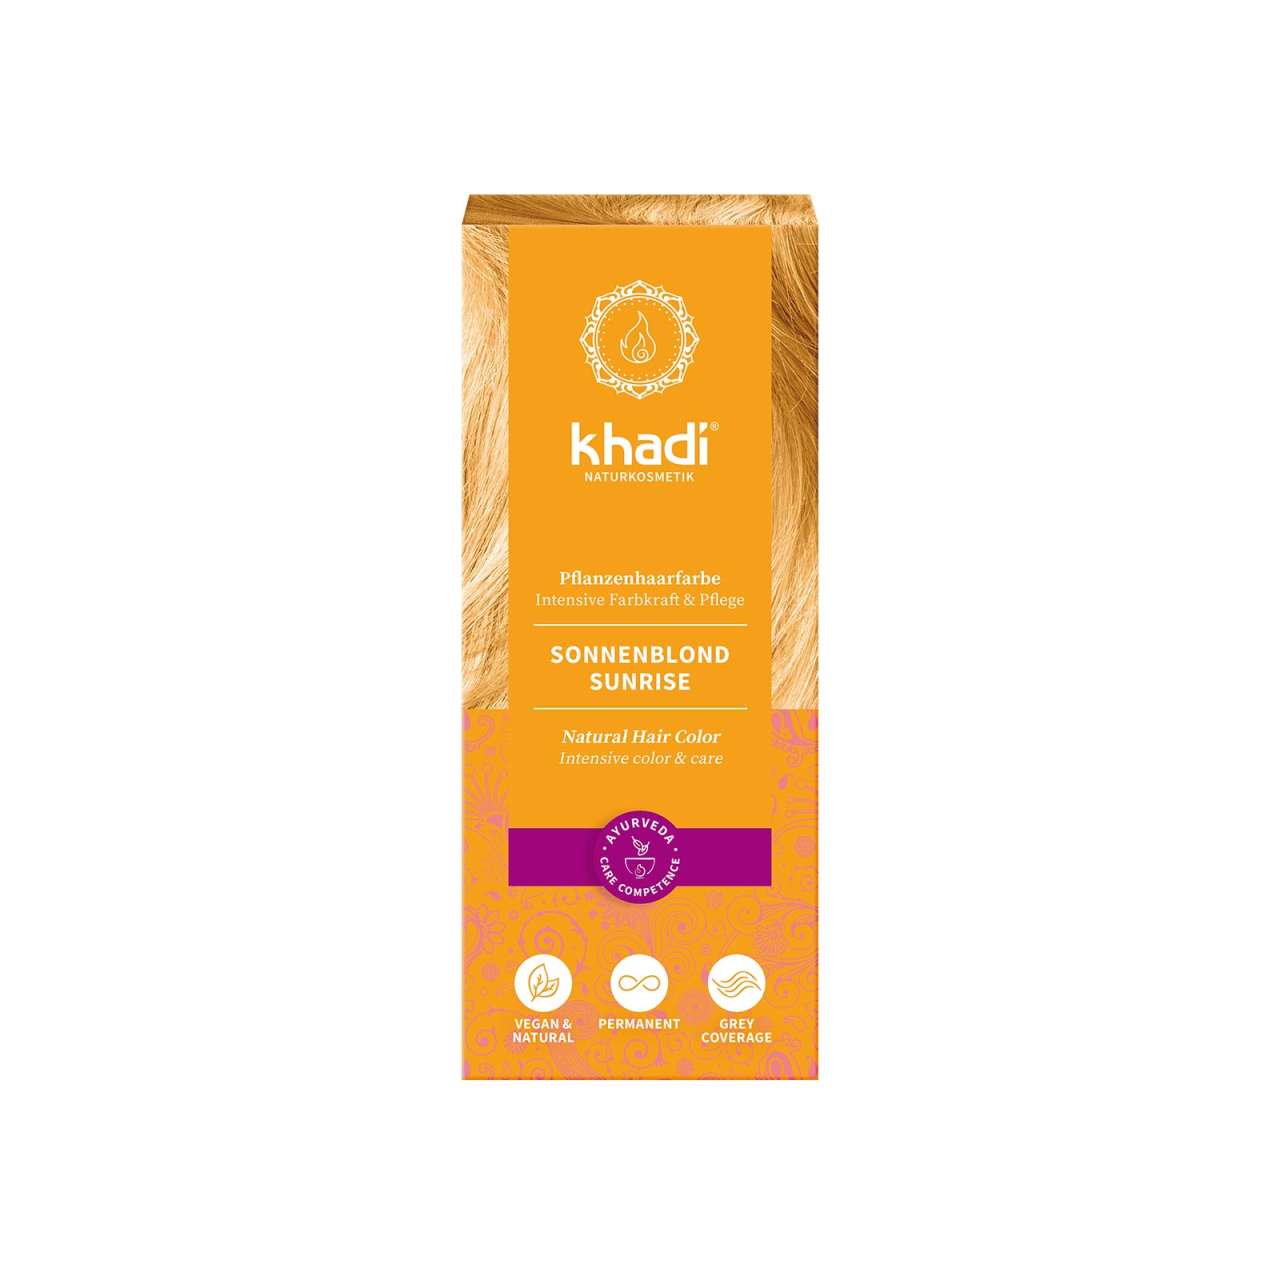 Khadi Sonnenblond: Natürliche Haarfarbe für sonnige Leuchtkraft